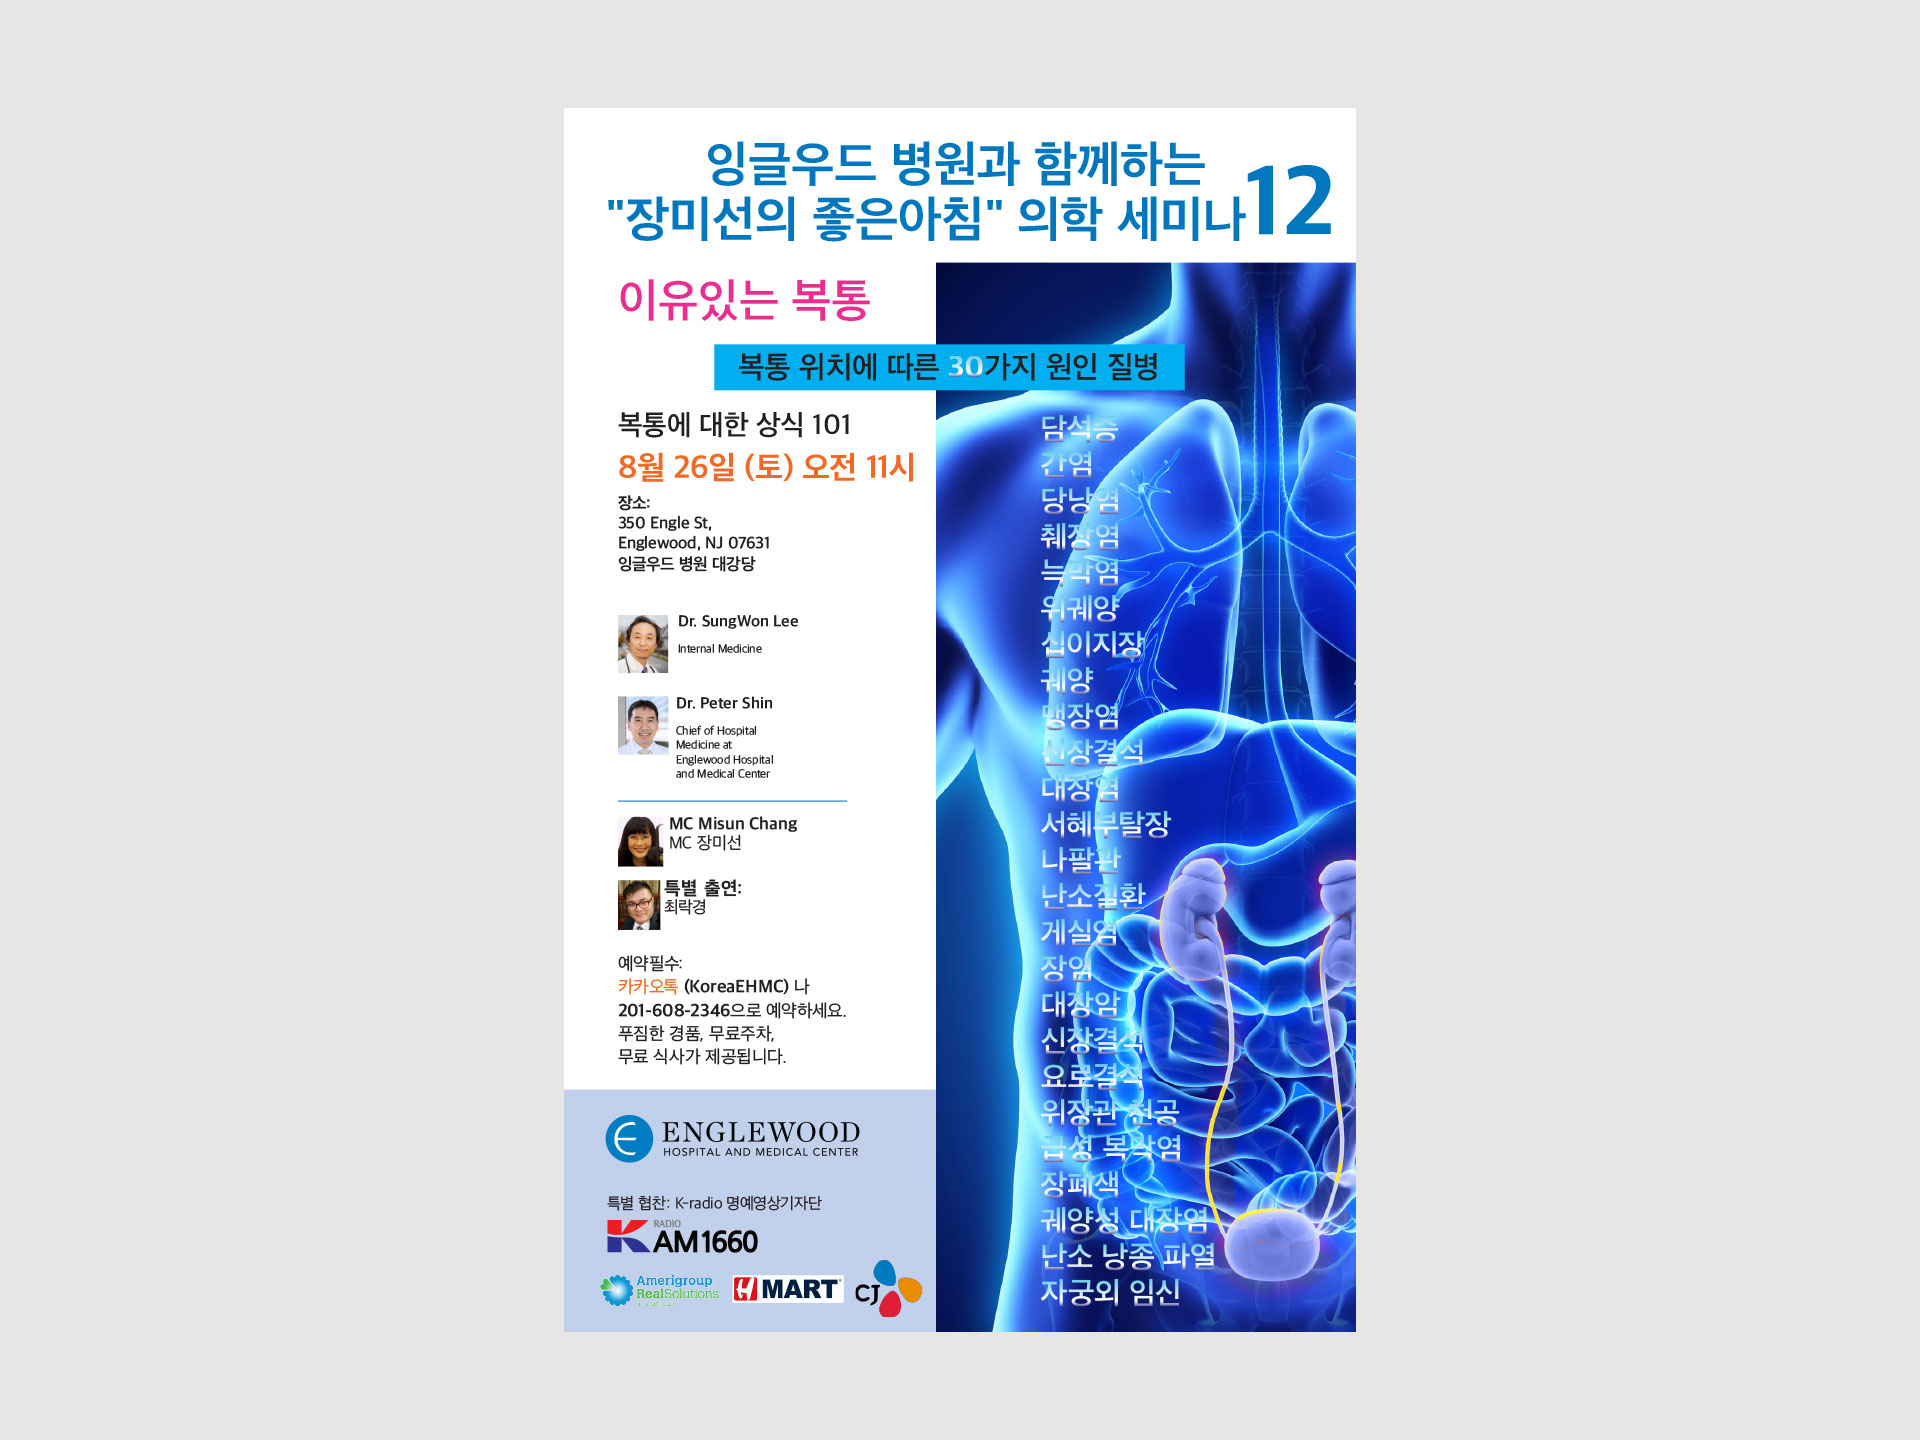 Korean Center event 12